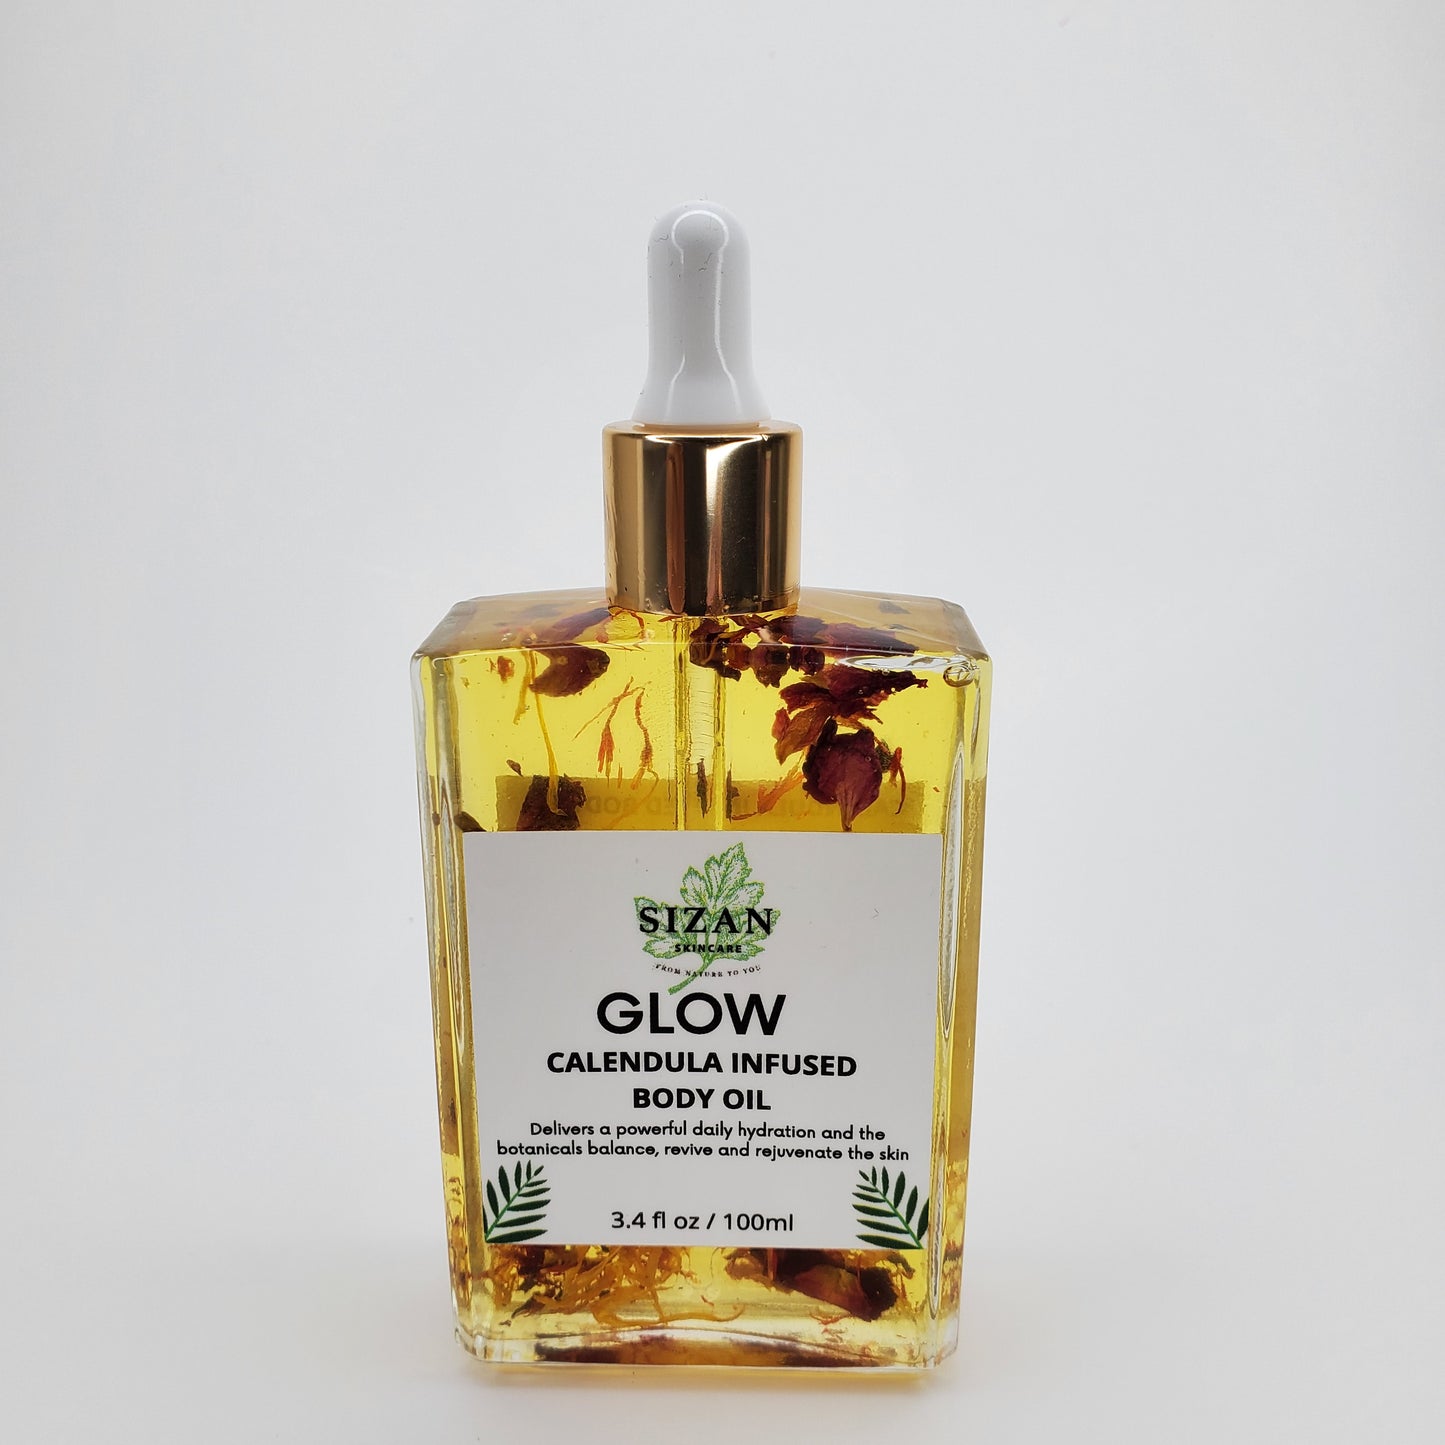 GLOW A Calendula Infused Body Oil